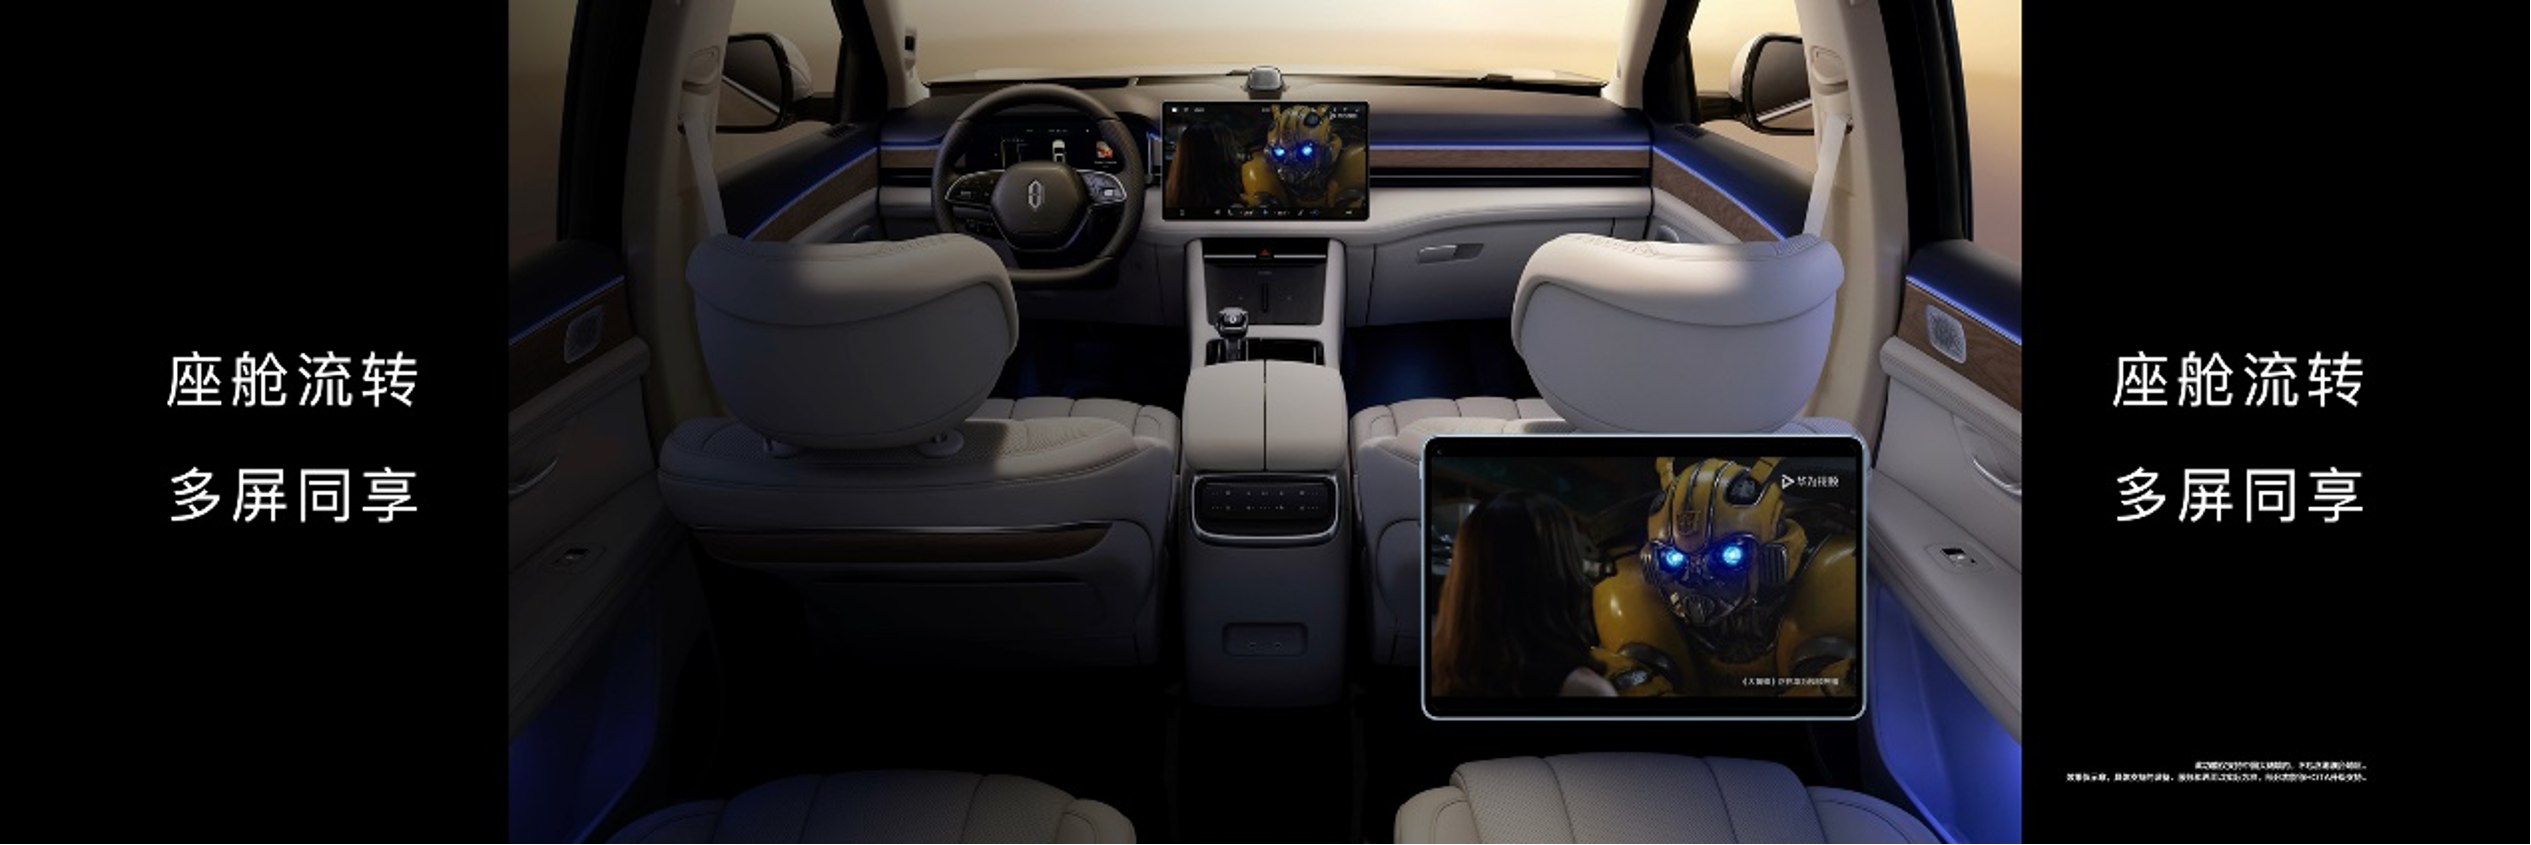 行业丨鸿蒙智能座舱升级:多屏同步观影,用游戏手柄在车机打手游